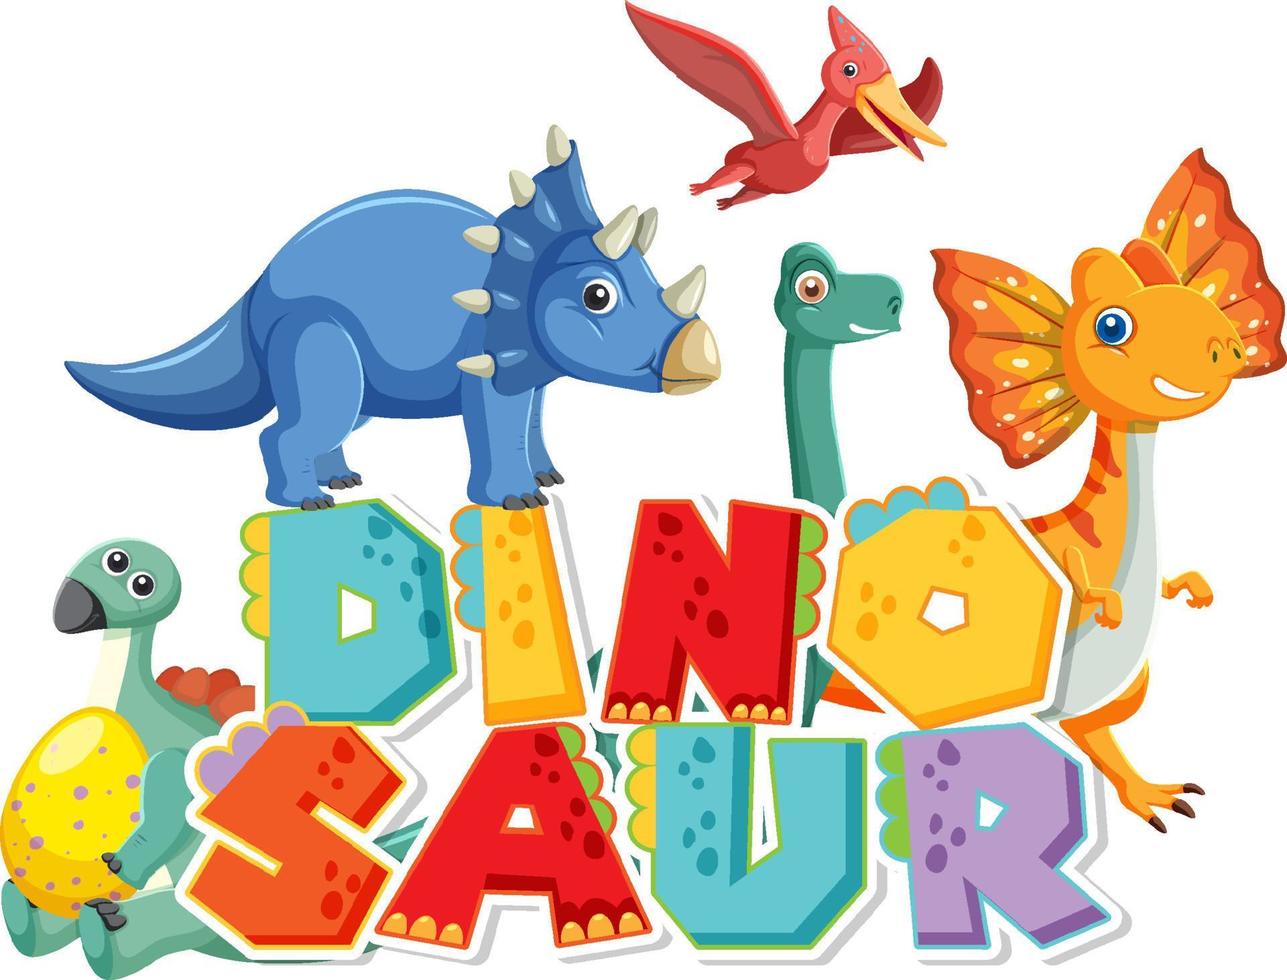 Cute dinosaur group with dinosaur word logo vector